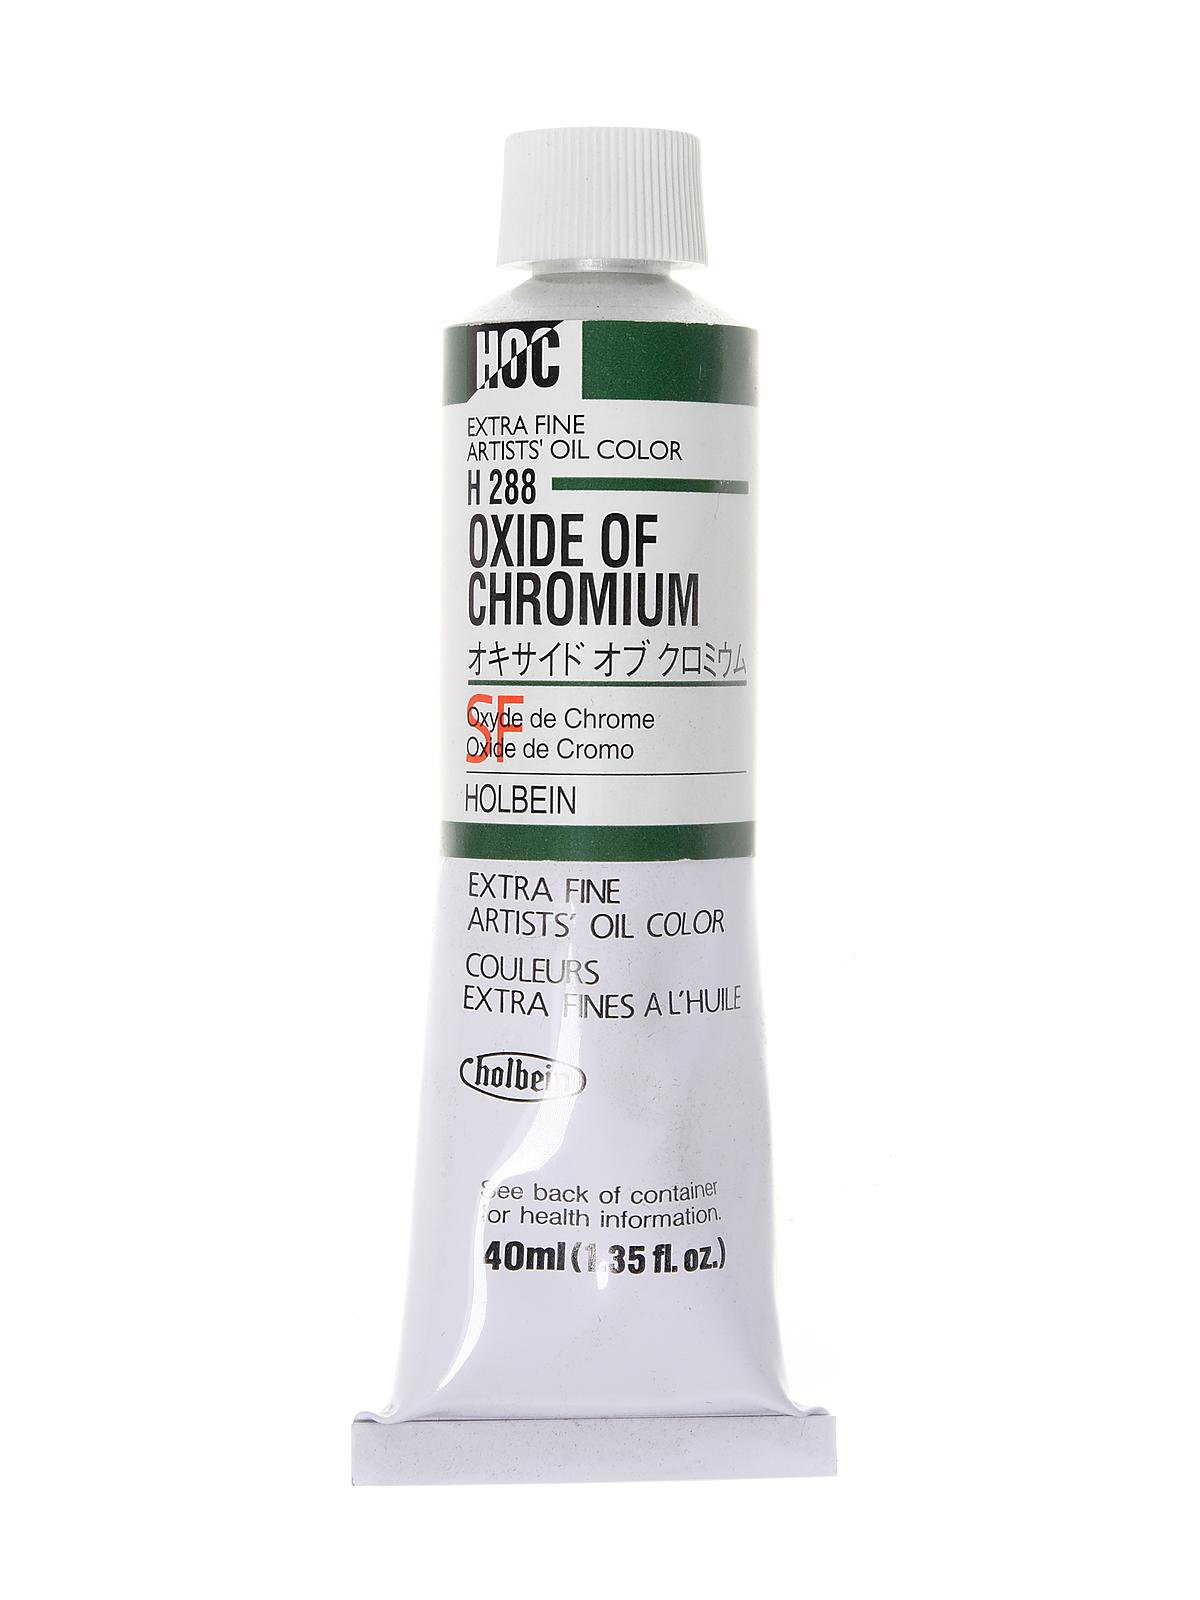 Oxide of Chromium